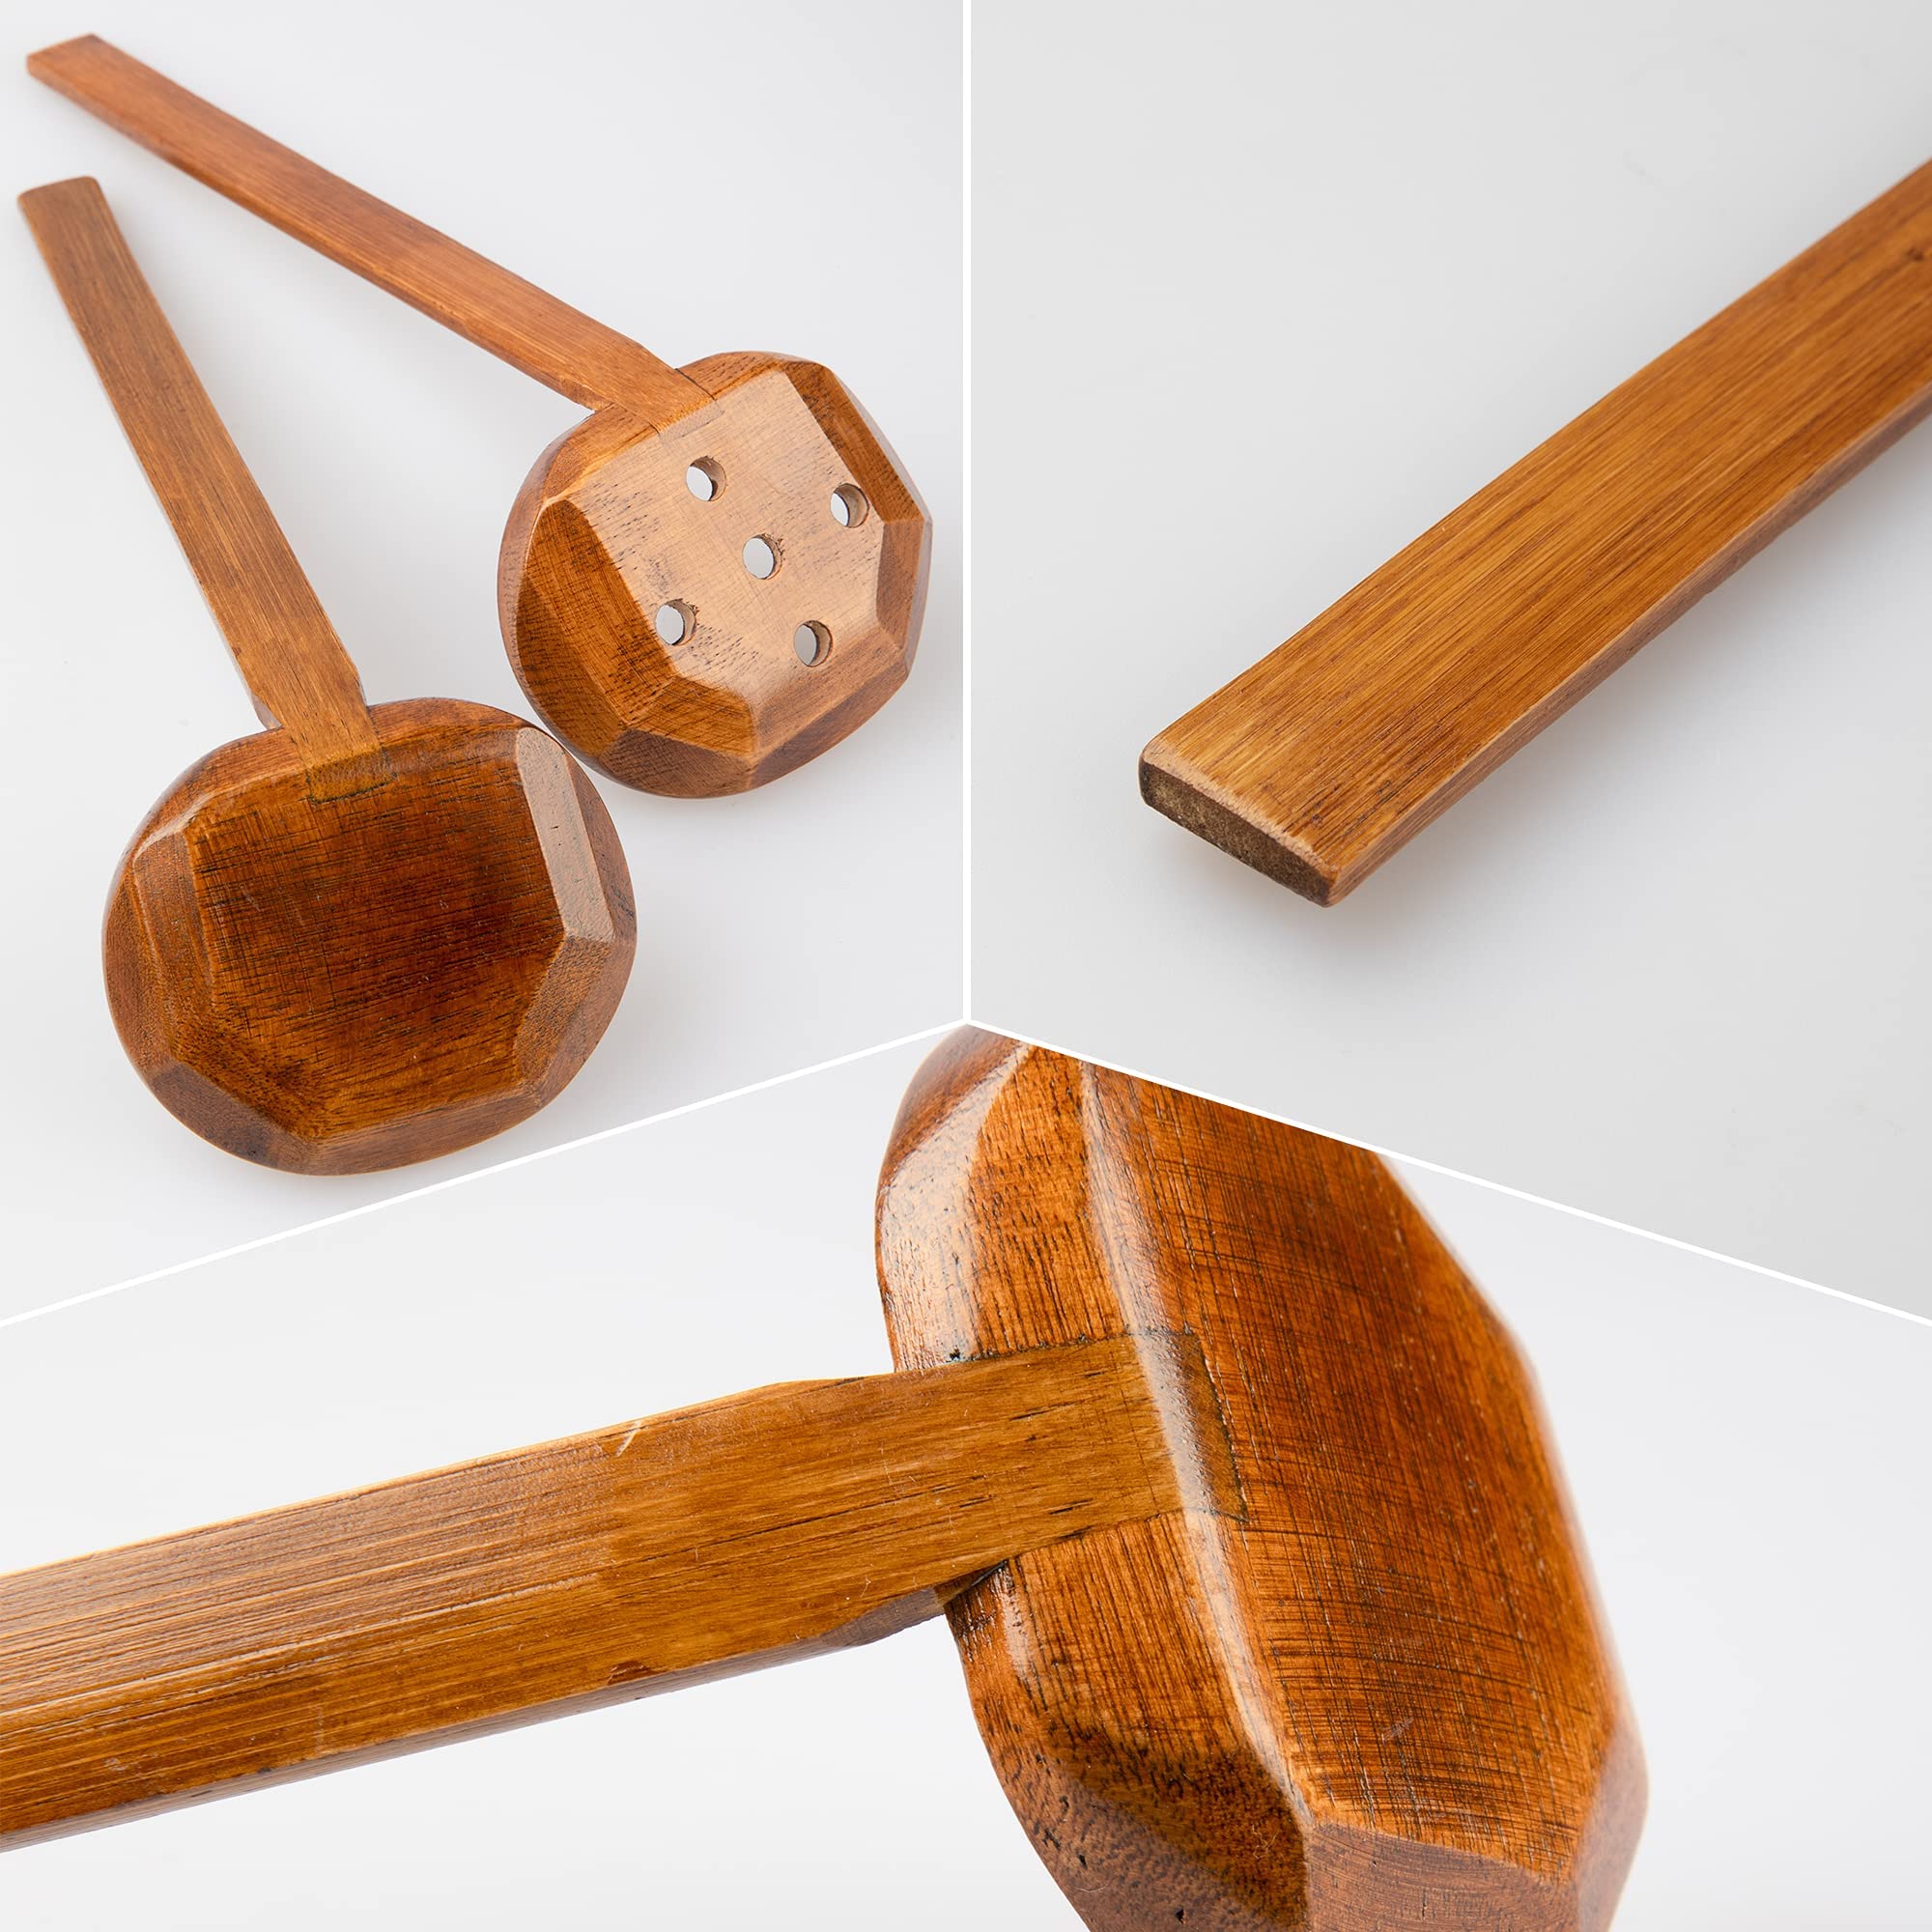 EOPER 4 Pieces Handcrafted 8.5 in Long Handle Wooden Ramen Soup Spoon Kitchen Utensils